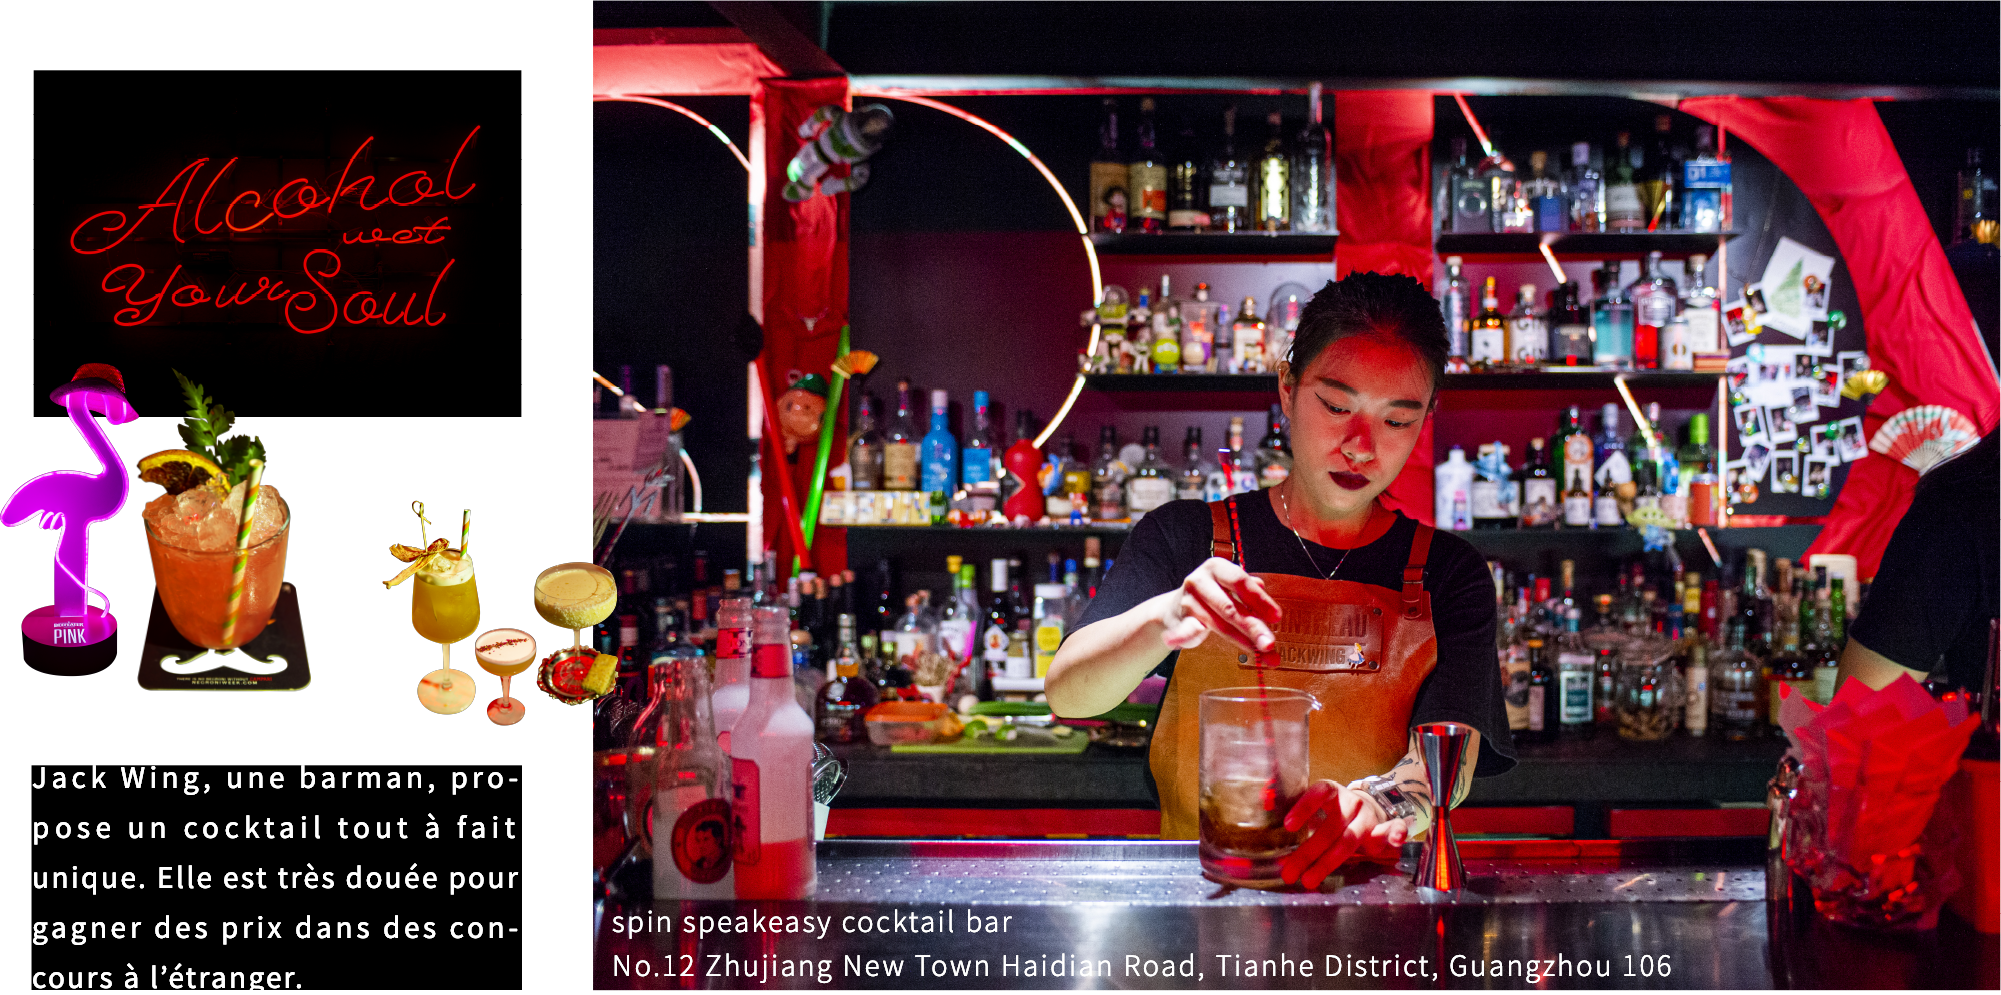 Jack Wing, une barman, propose un cocktail tout à fait unique. Elle est très douée pour gagner des prix dans des concours à l’étranger.